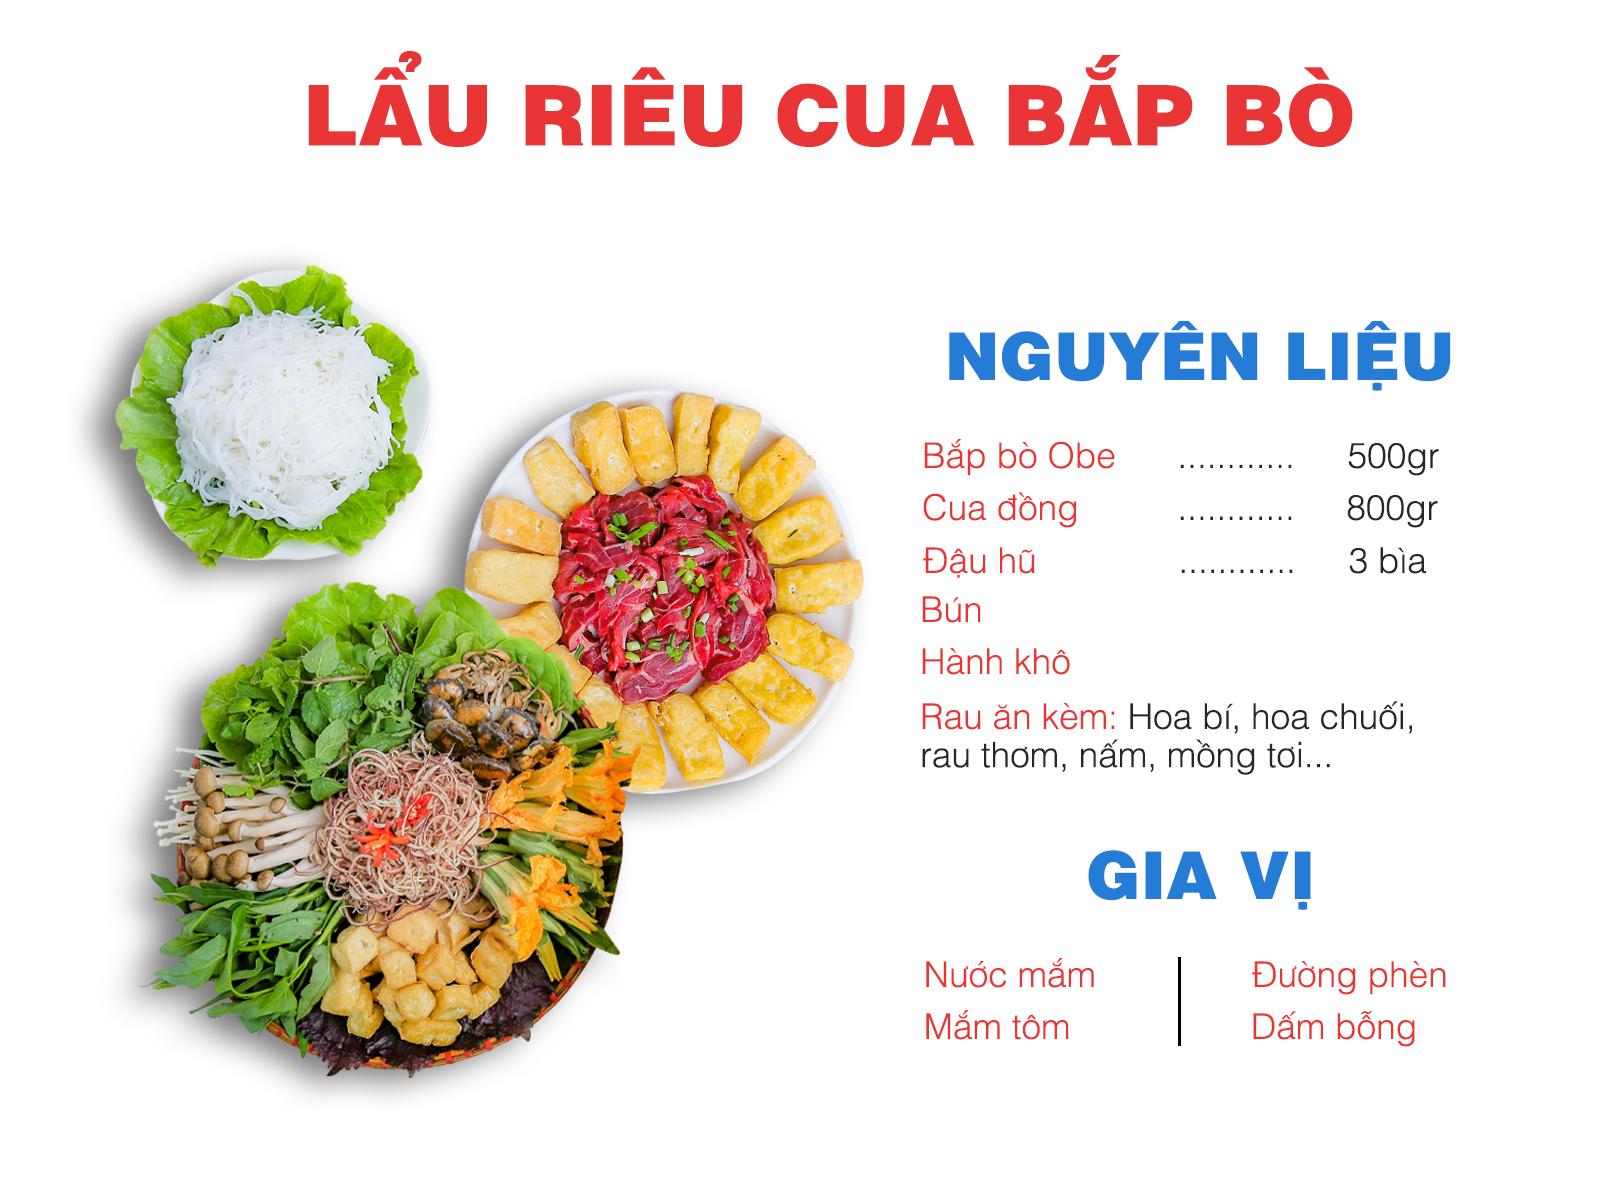 Màn “hợp tác” đỉnh cao: Bò ngoại hữu cơ Obe kết hợp món Việt truyền thống, ăn là mê! - Ảnh 5.